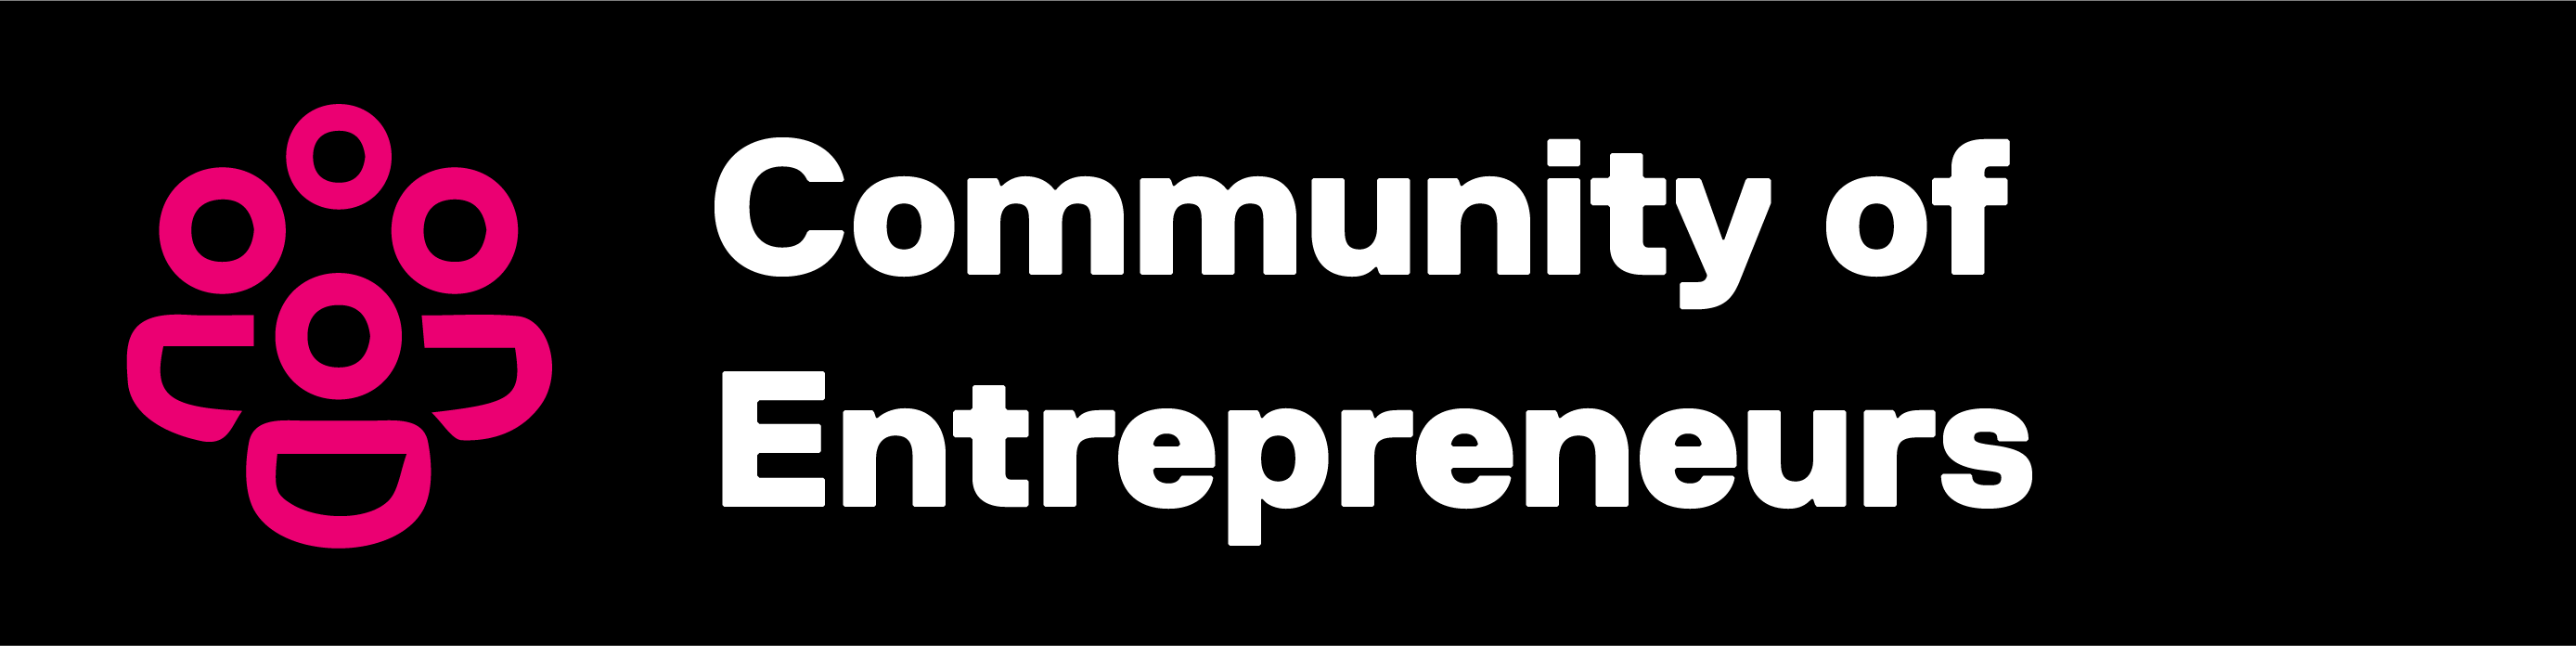 Community of entrepreneurs